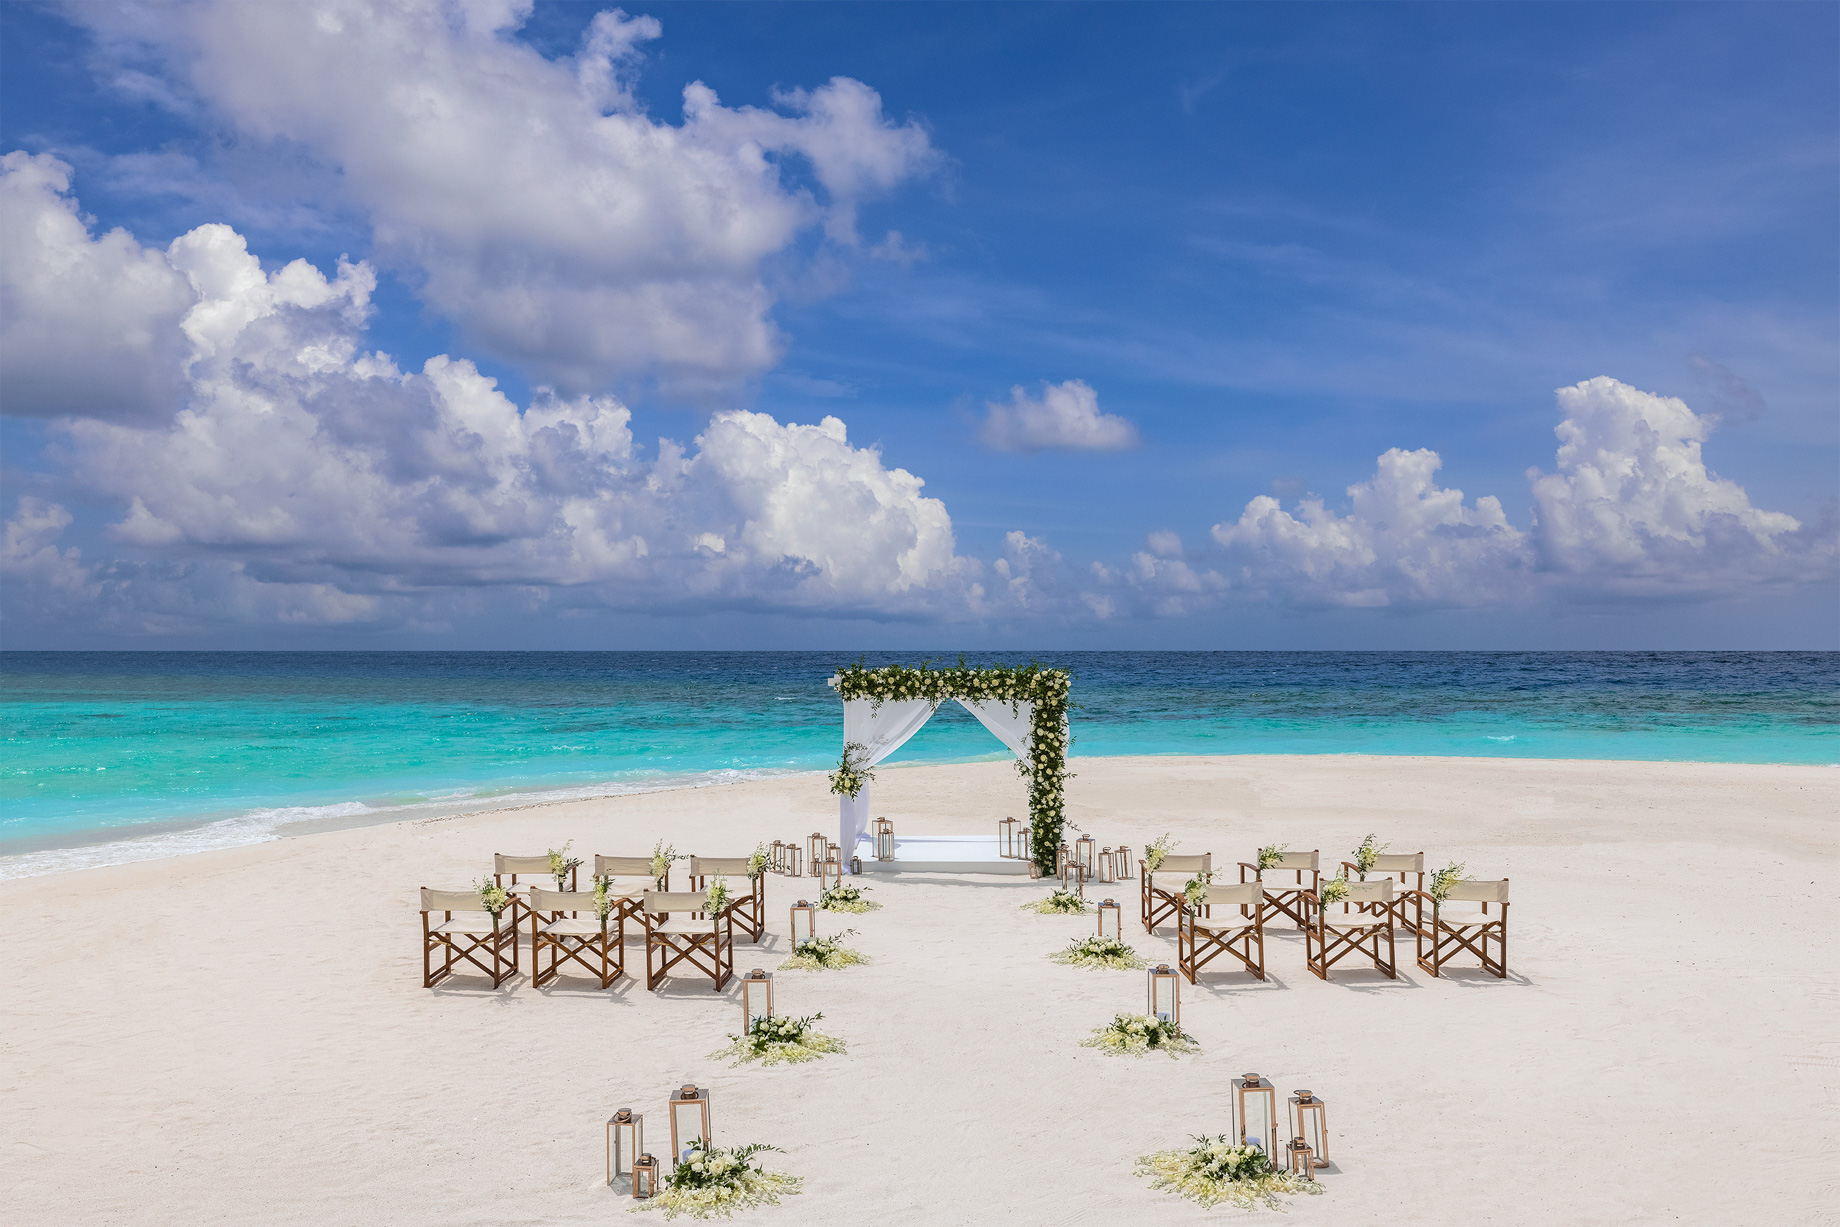 Anantara Kihavah Maldives Villas Resort – Baa Atoll, Maldives – Beach Wedding